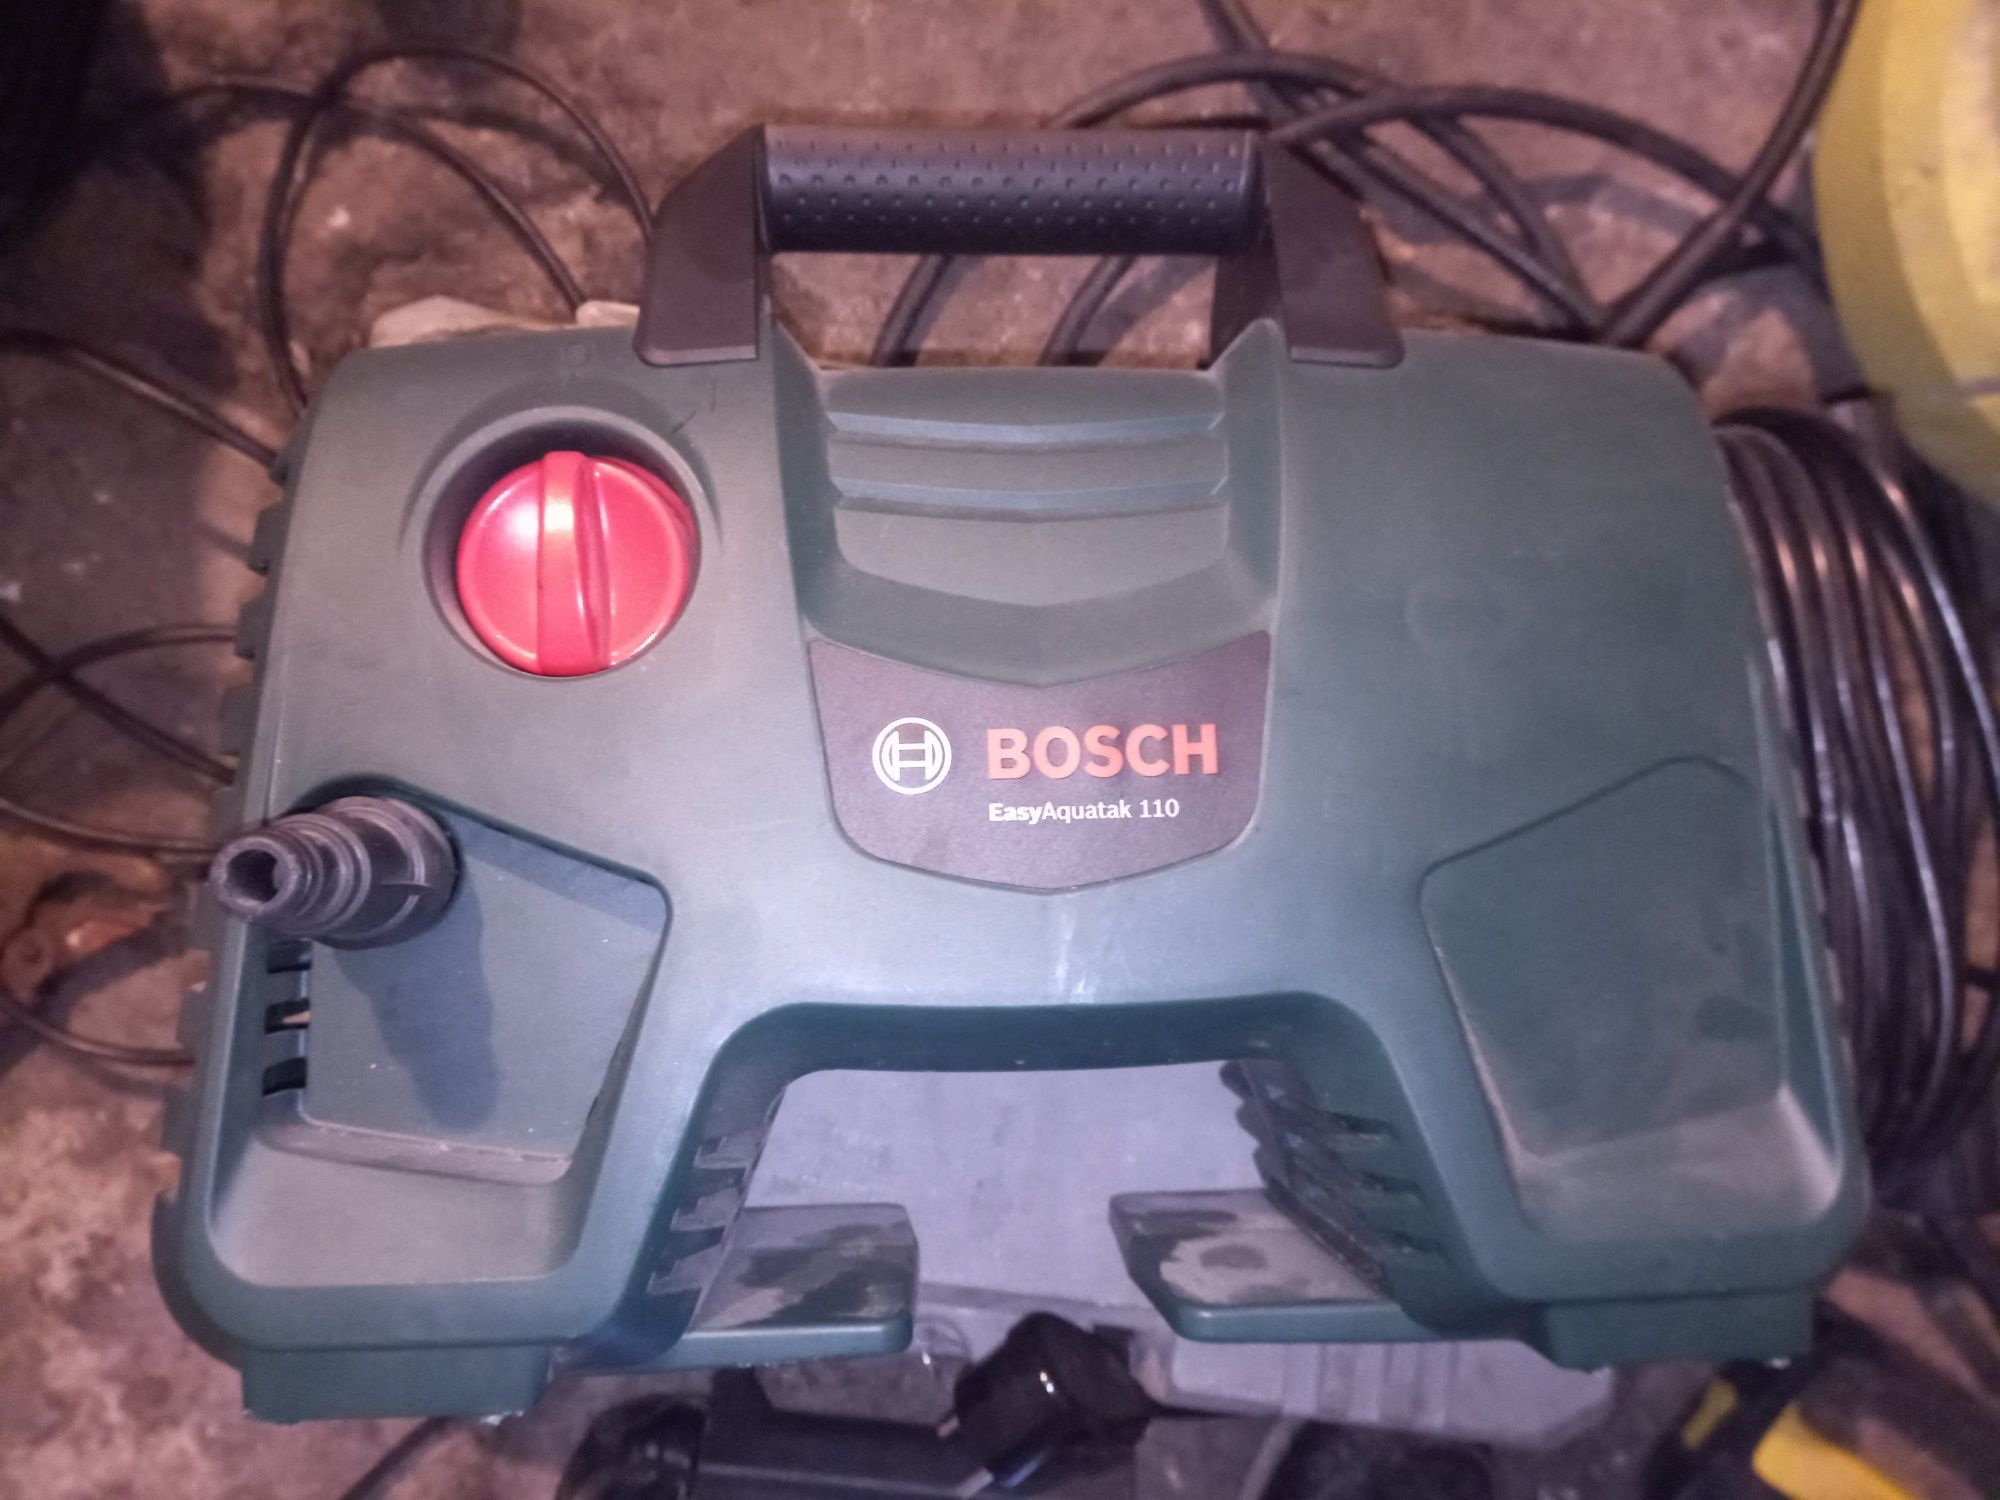 Sprzedam Myjka,karcher ciśnieniową Bosch EasyAquatak 110